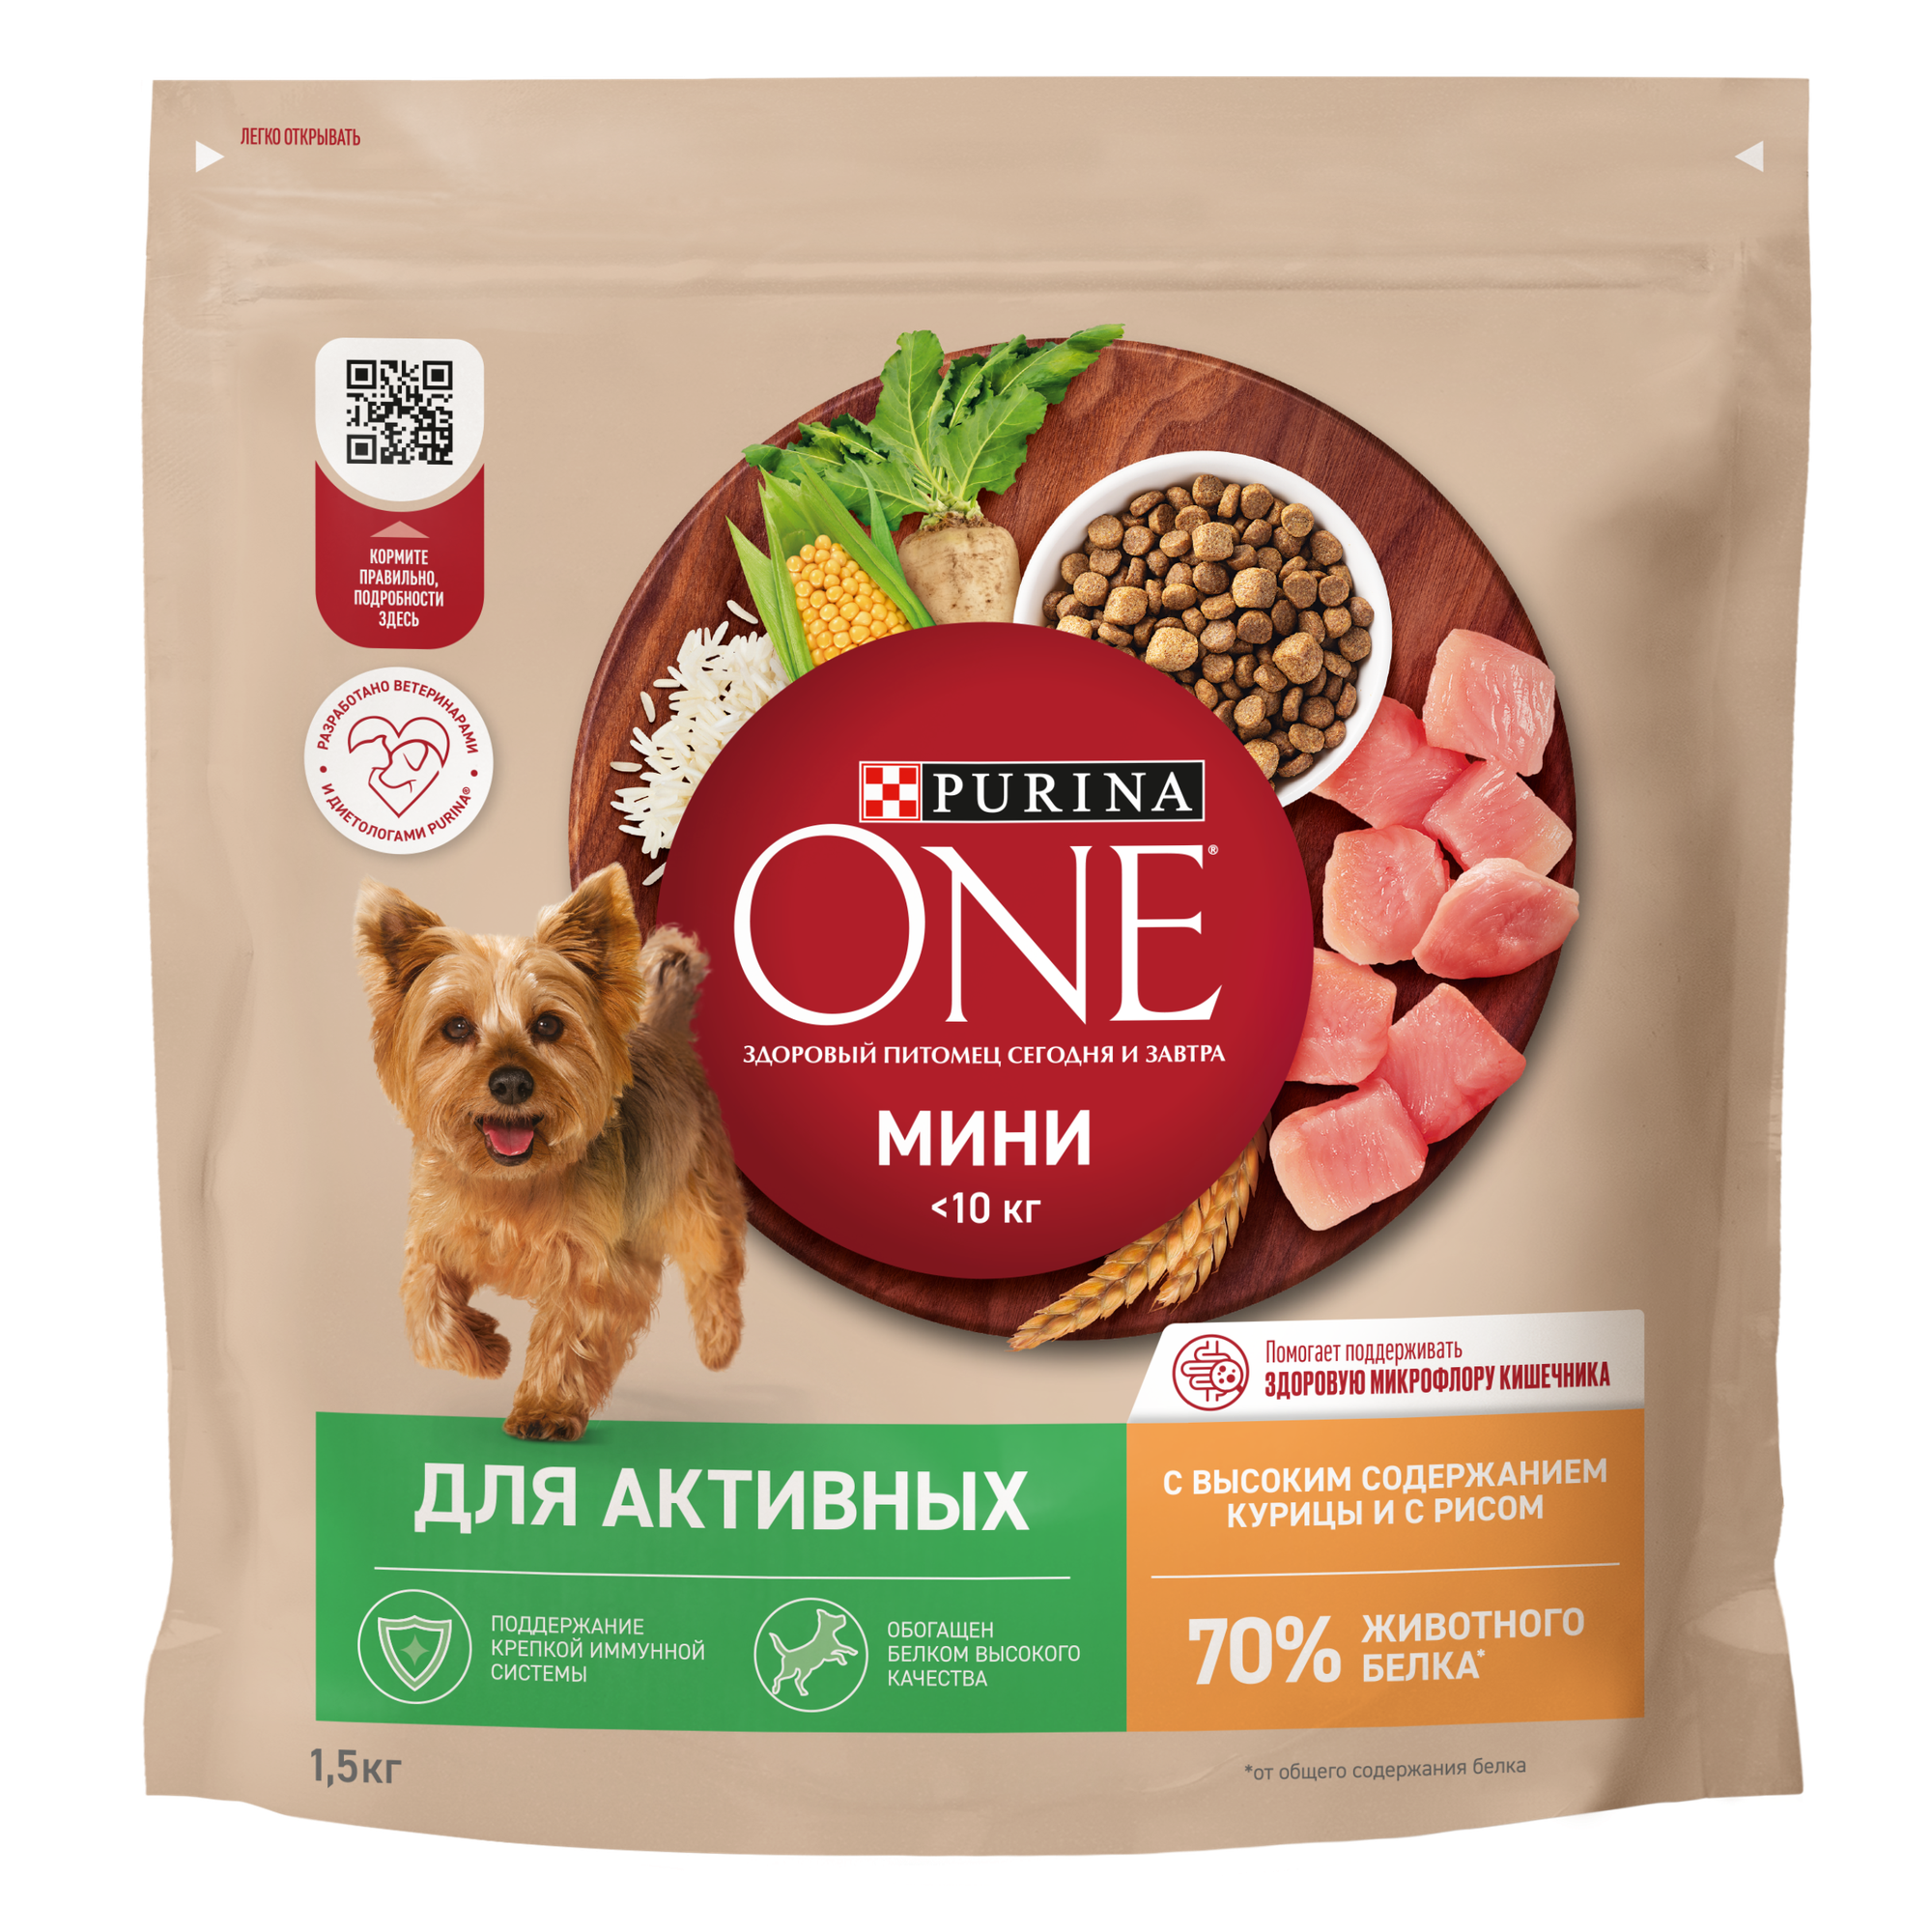 PURINA ONE мини 1,5 кг сухой корм для собак мелких пород с активным образом жизни, с высоким содержанием курицы и с рисом